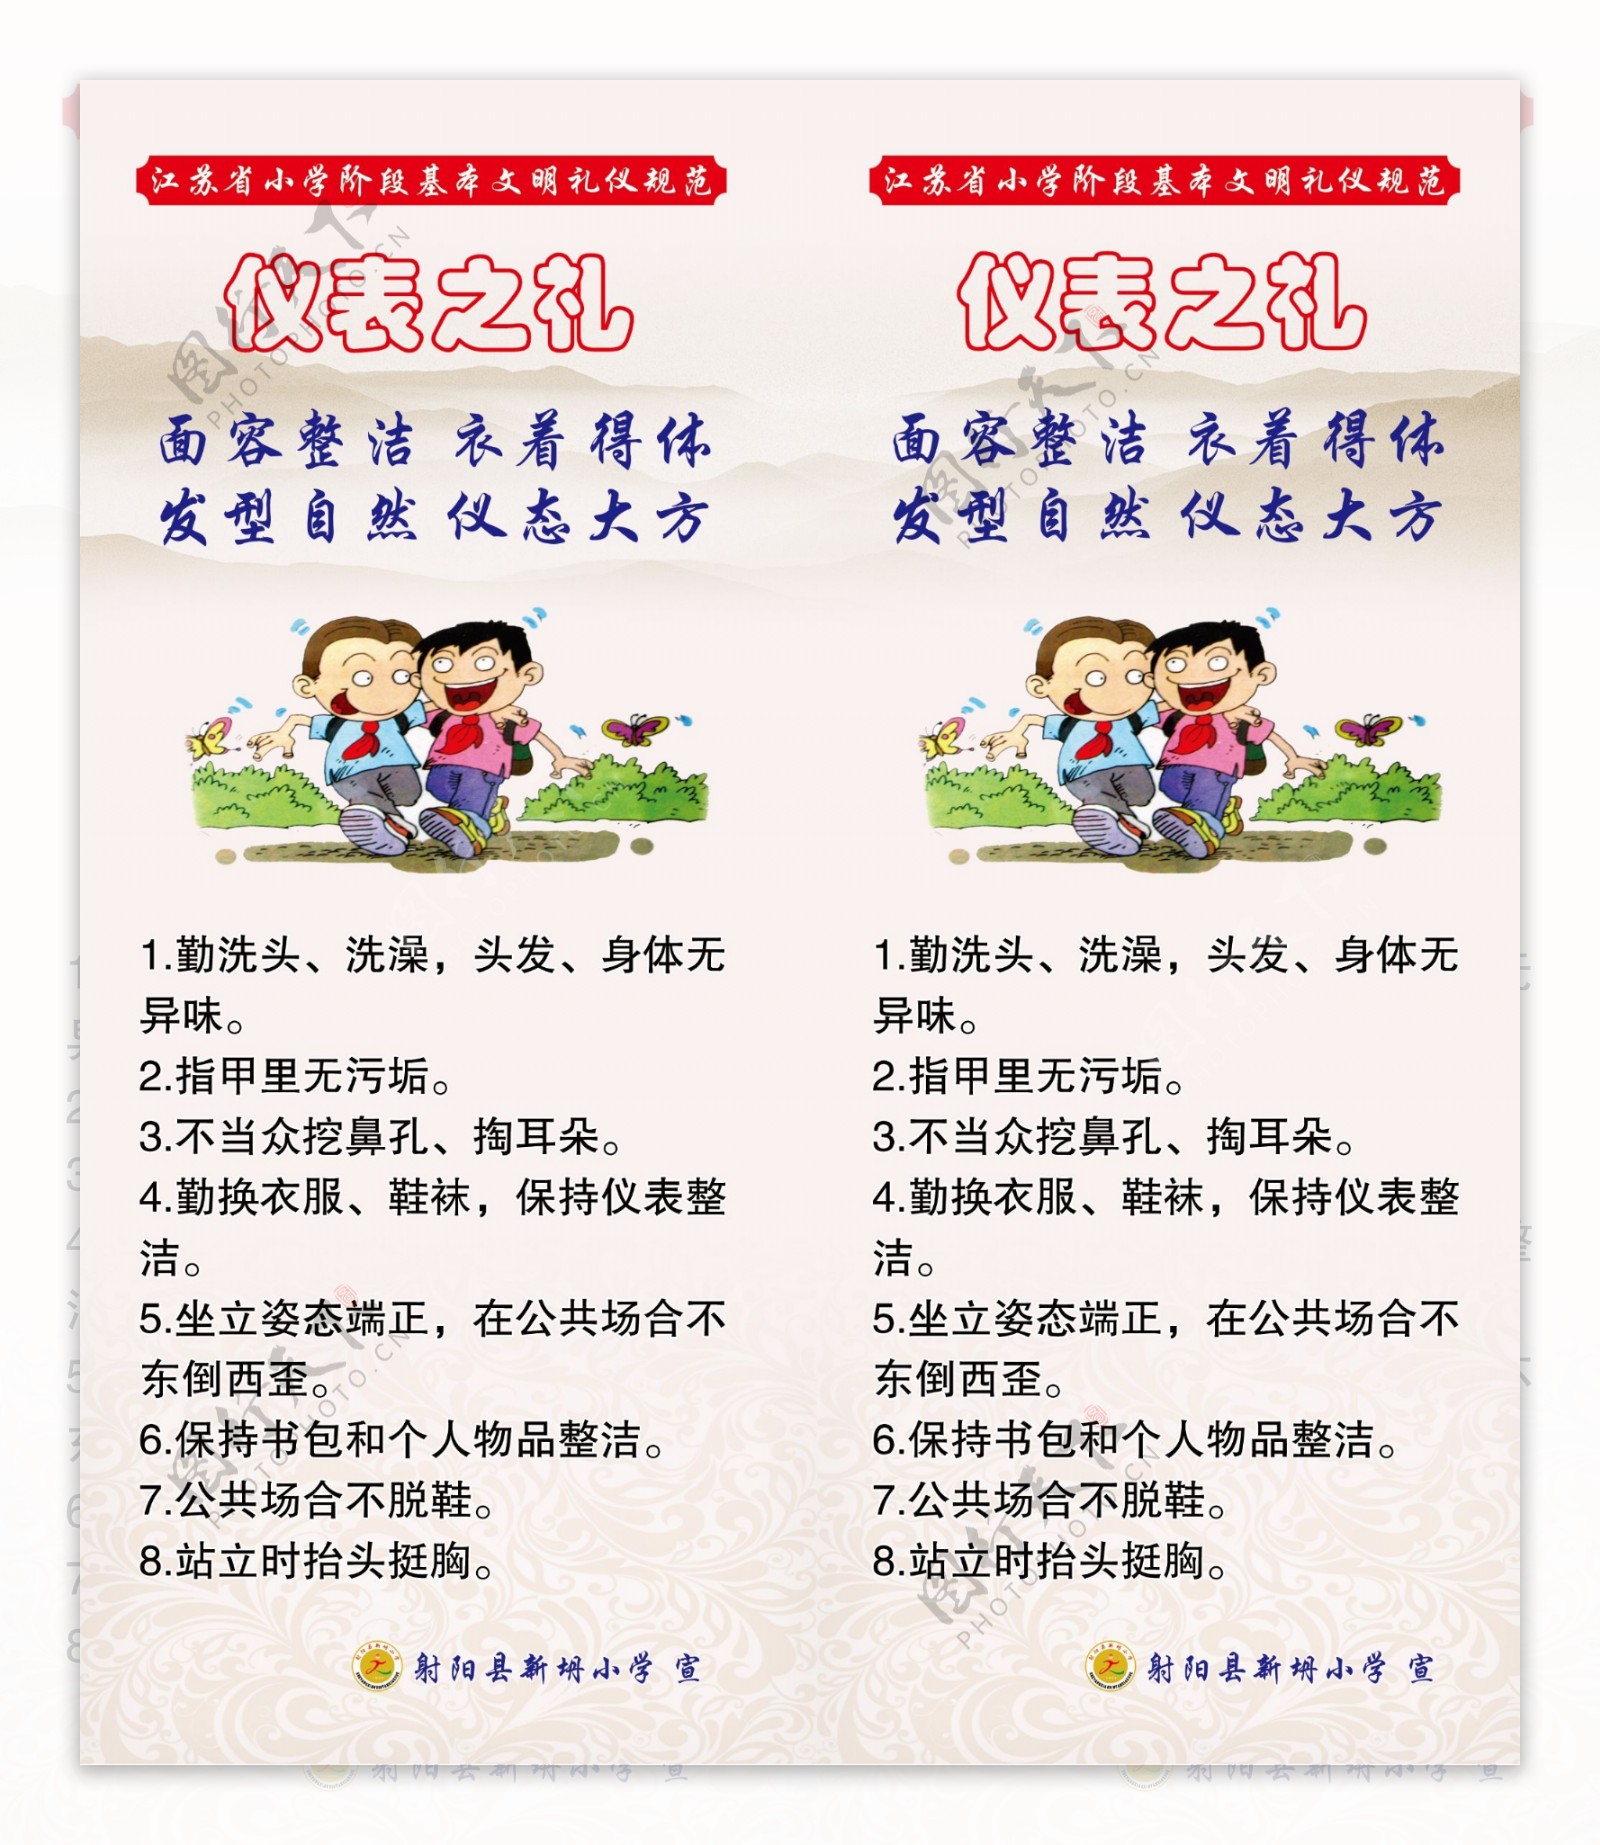 江苏省文明礼仪规范仪表之礼图片